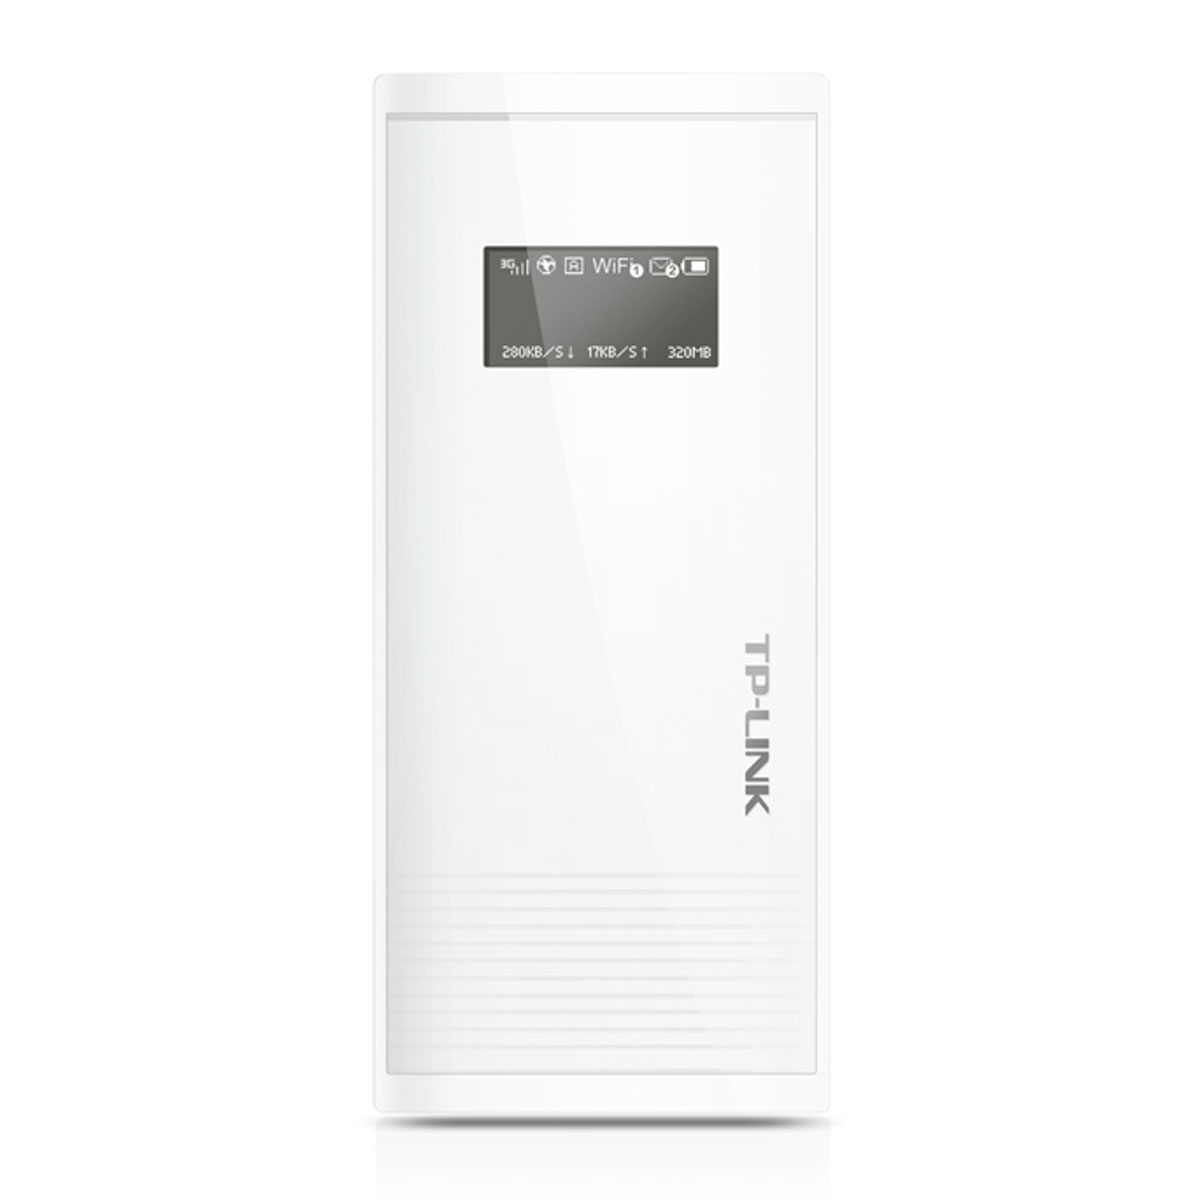 Мобильный беспроводной 3G Wi-Fi роутер TP-LINK M5360 с аккумулятором Power Bank на 5200 мАч, цвет белый